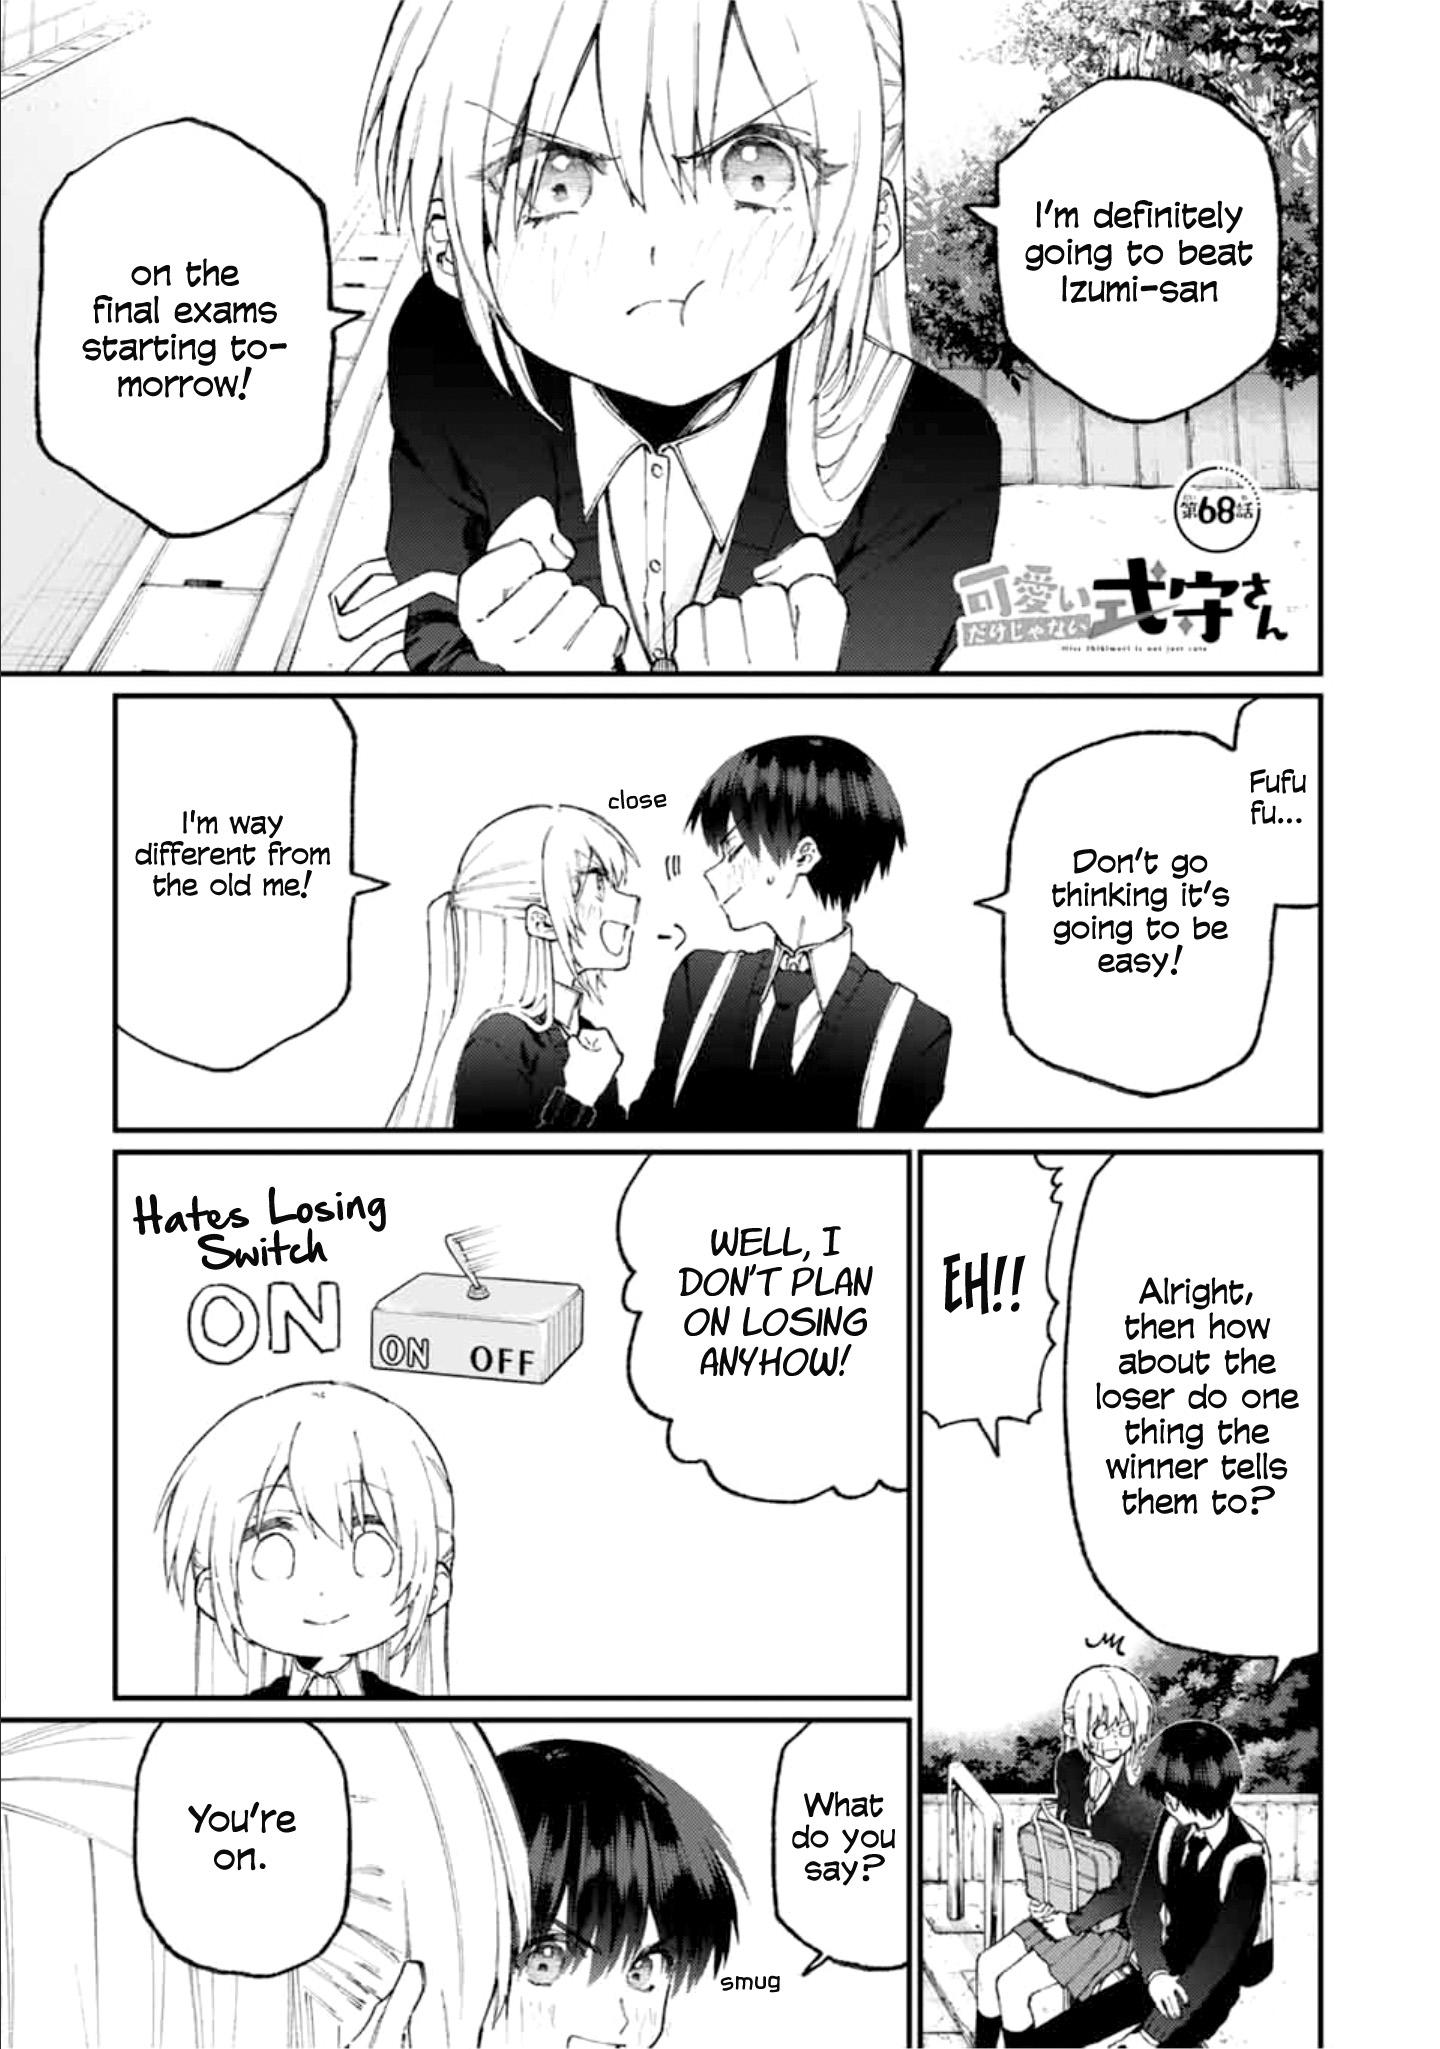 Shikimori's Not Just a Cutie Manga Online